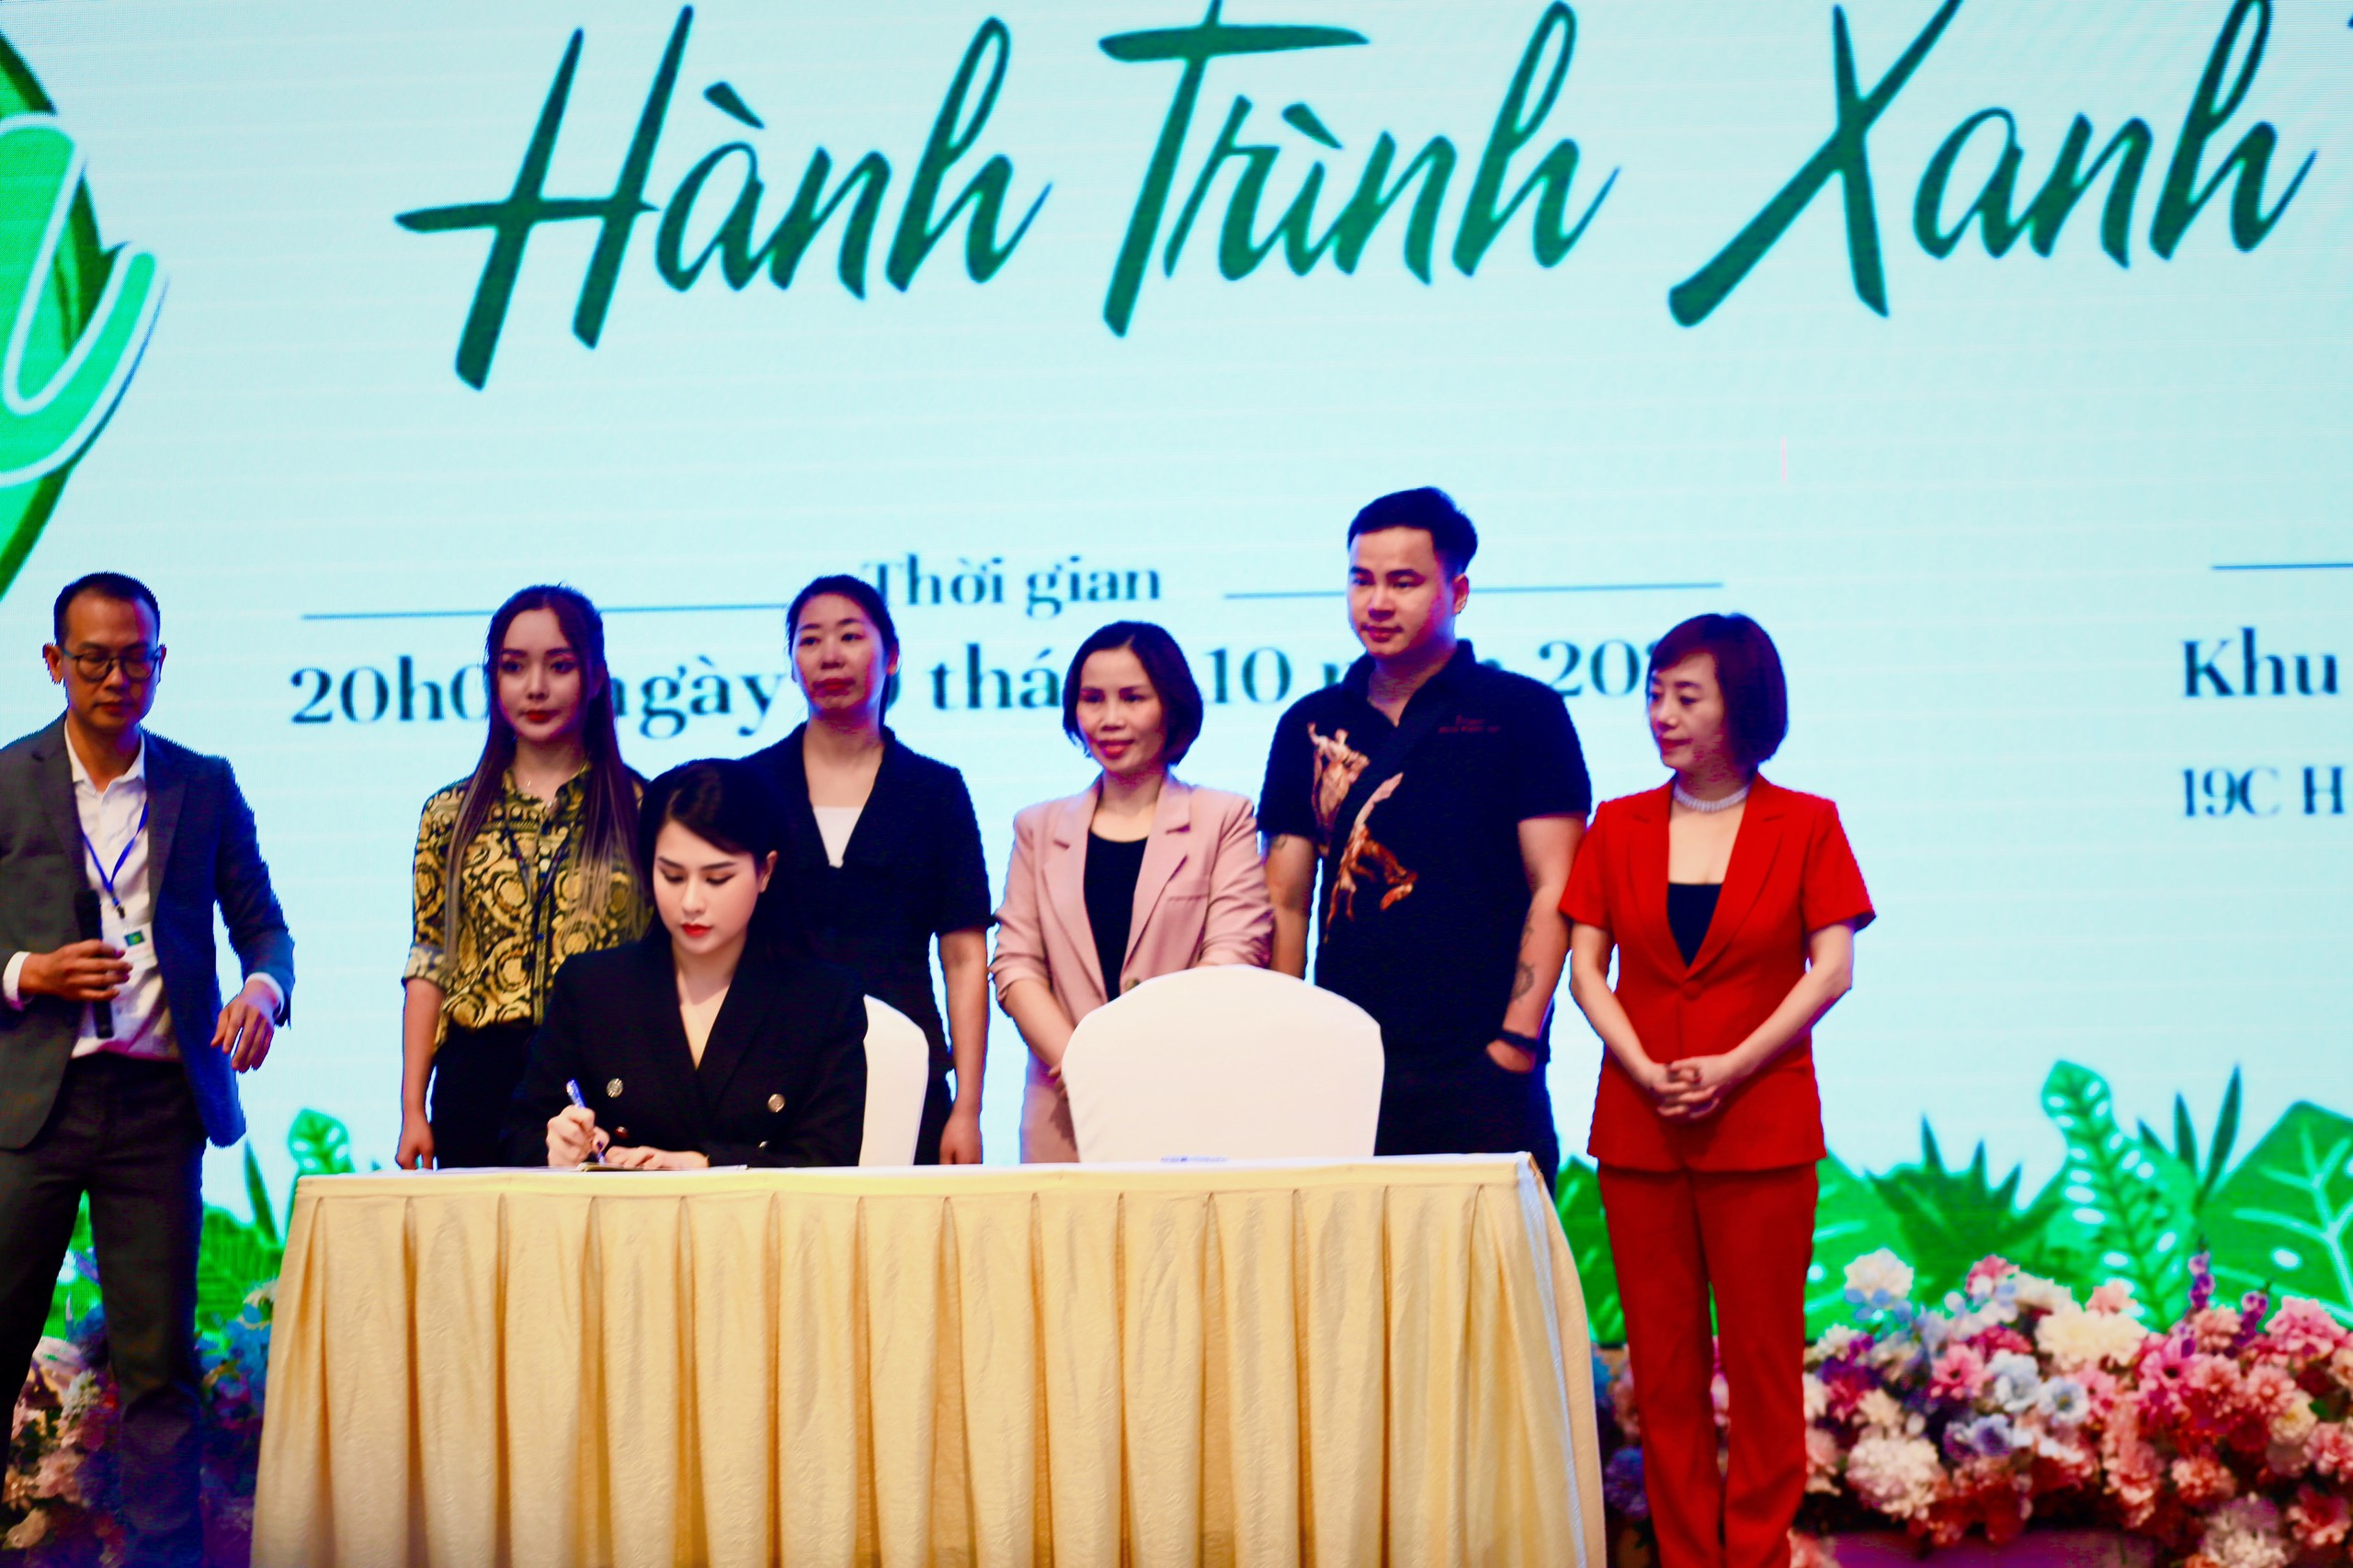 Long Phụng tham dự Lễ ra mắt Hành trình Xanh Việt Nam